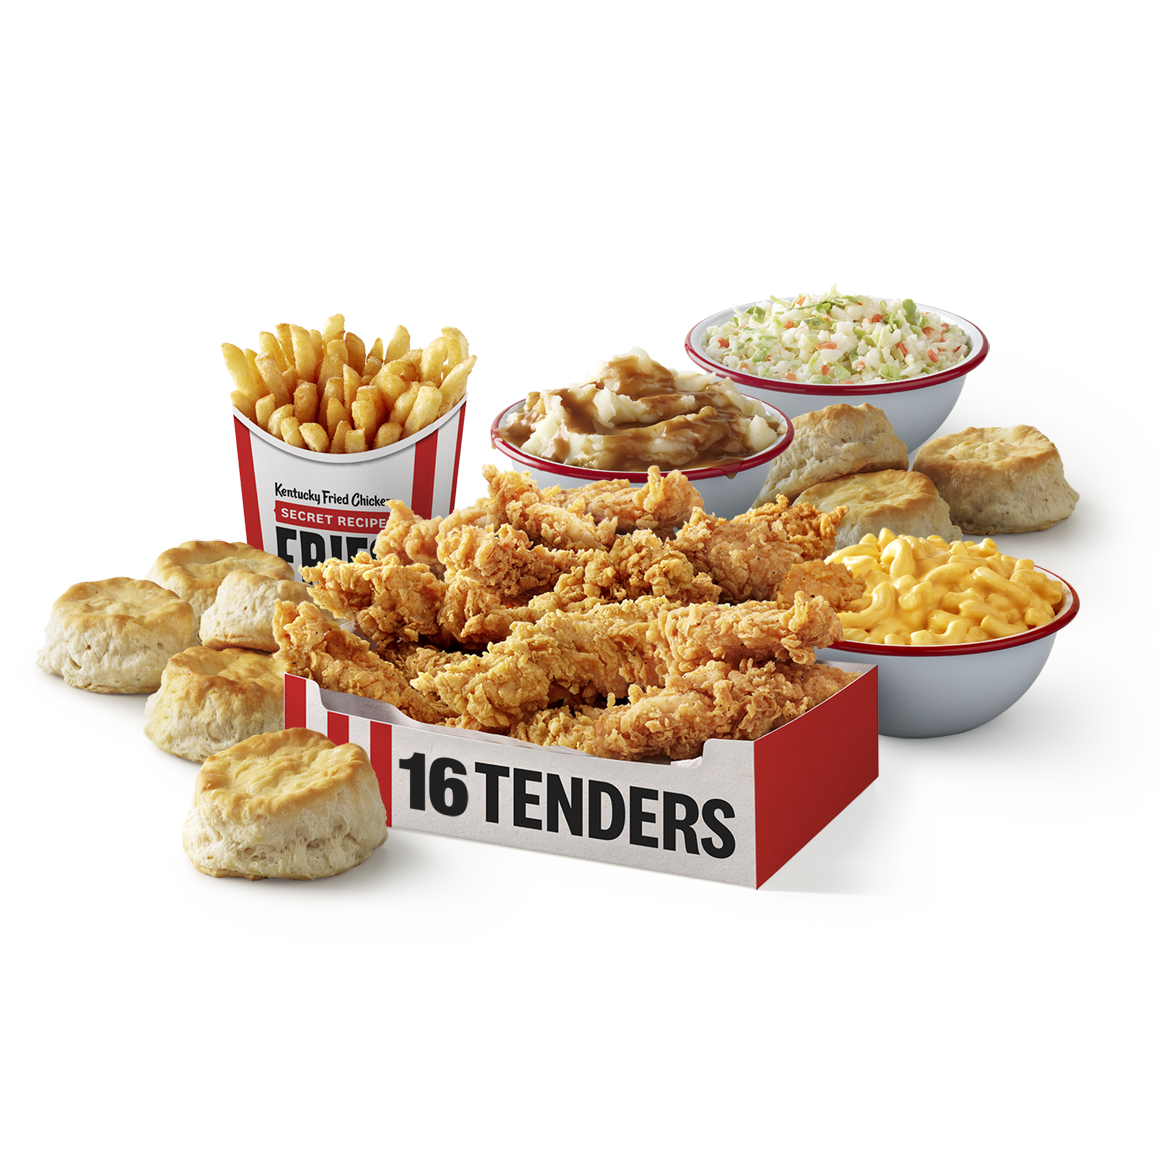 order online - 16 Tenders Meal from Kfc on bringmethat.com